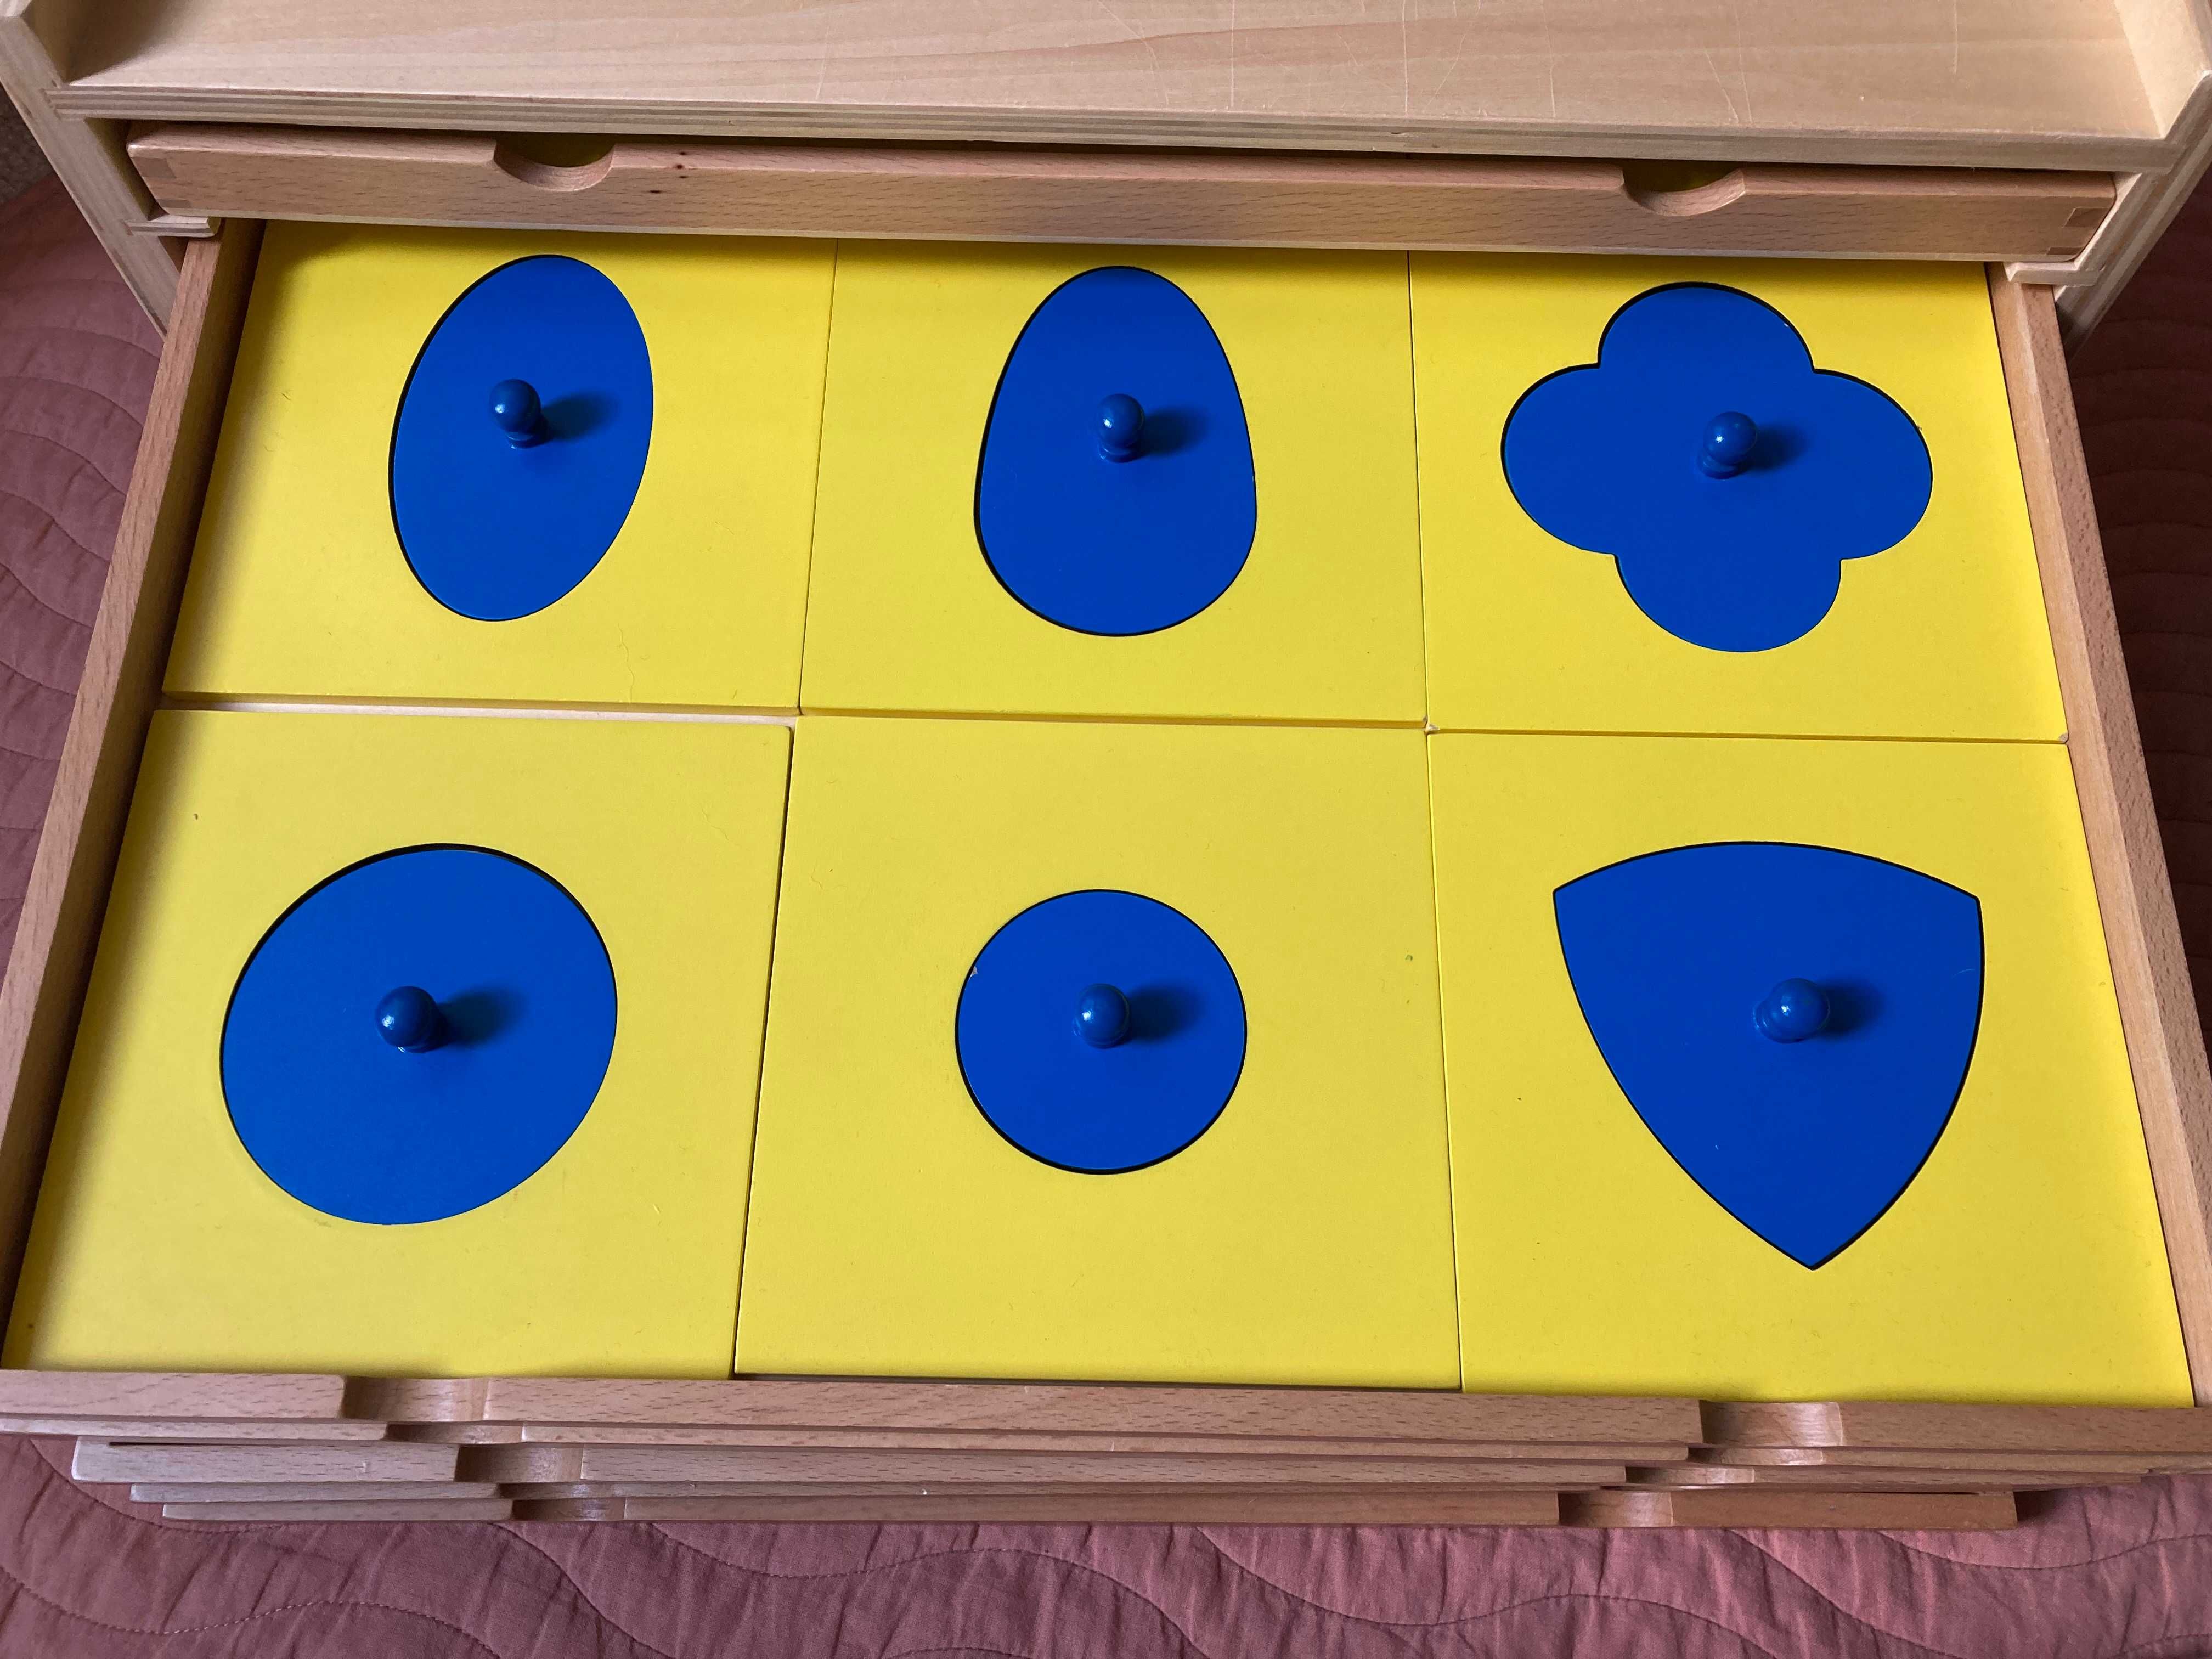 Komoda Geometryczna Montessori PREMIUM - duża, stan: IDEALNY!